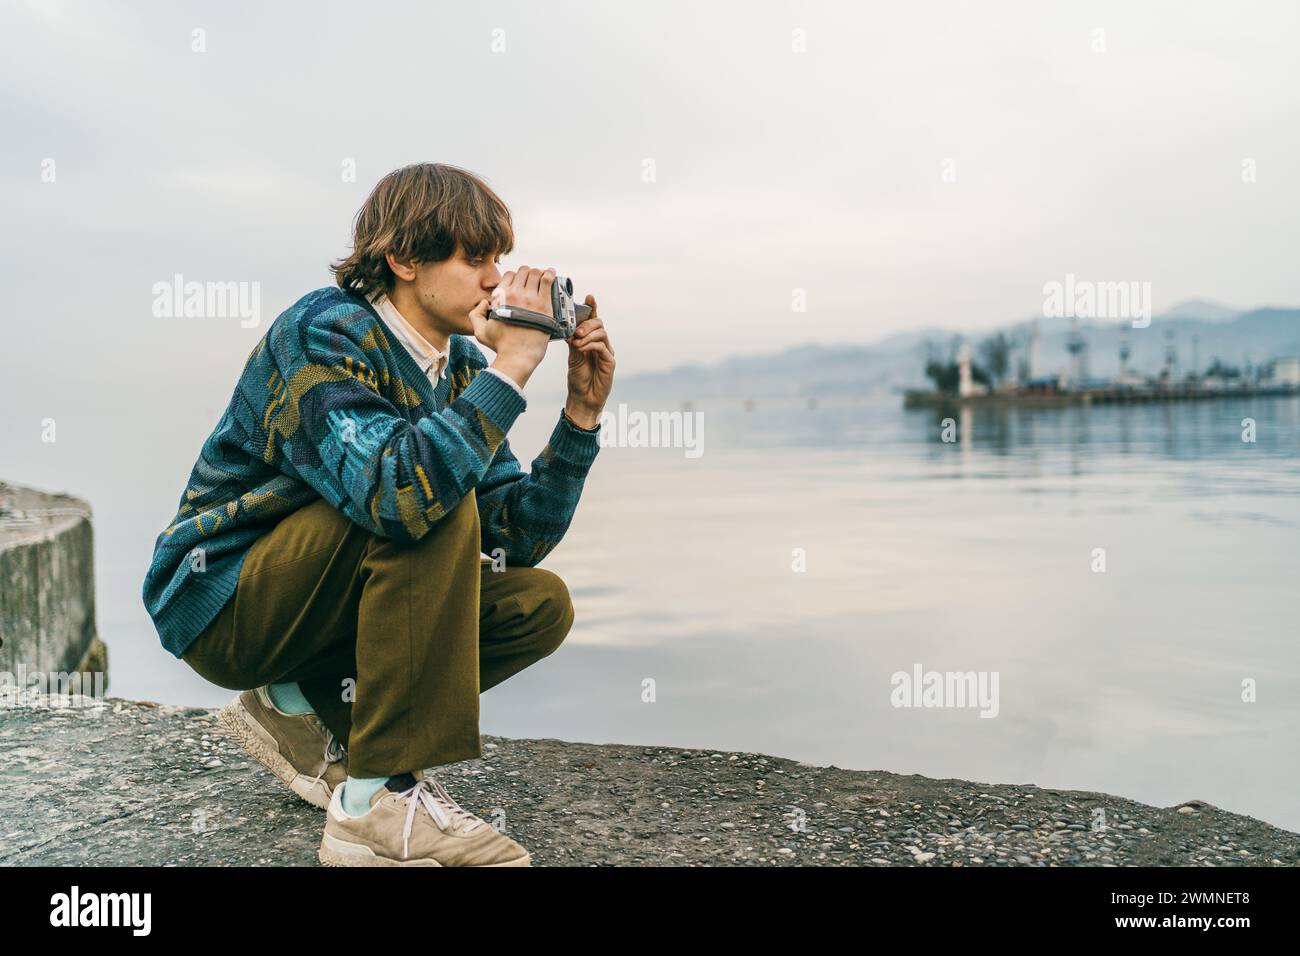 Réfléchi jeune homme accroupie par le lac tranquille ou la surface de la mer, capturant la scène avec la caméra rétro. Banque D'Images